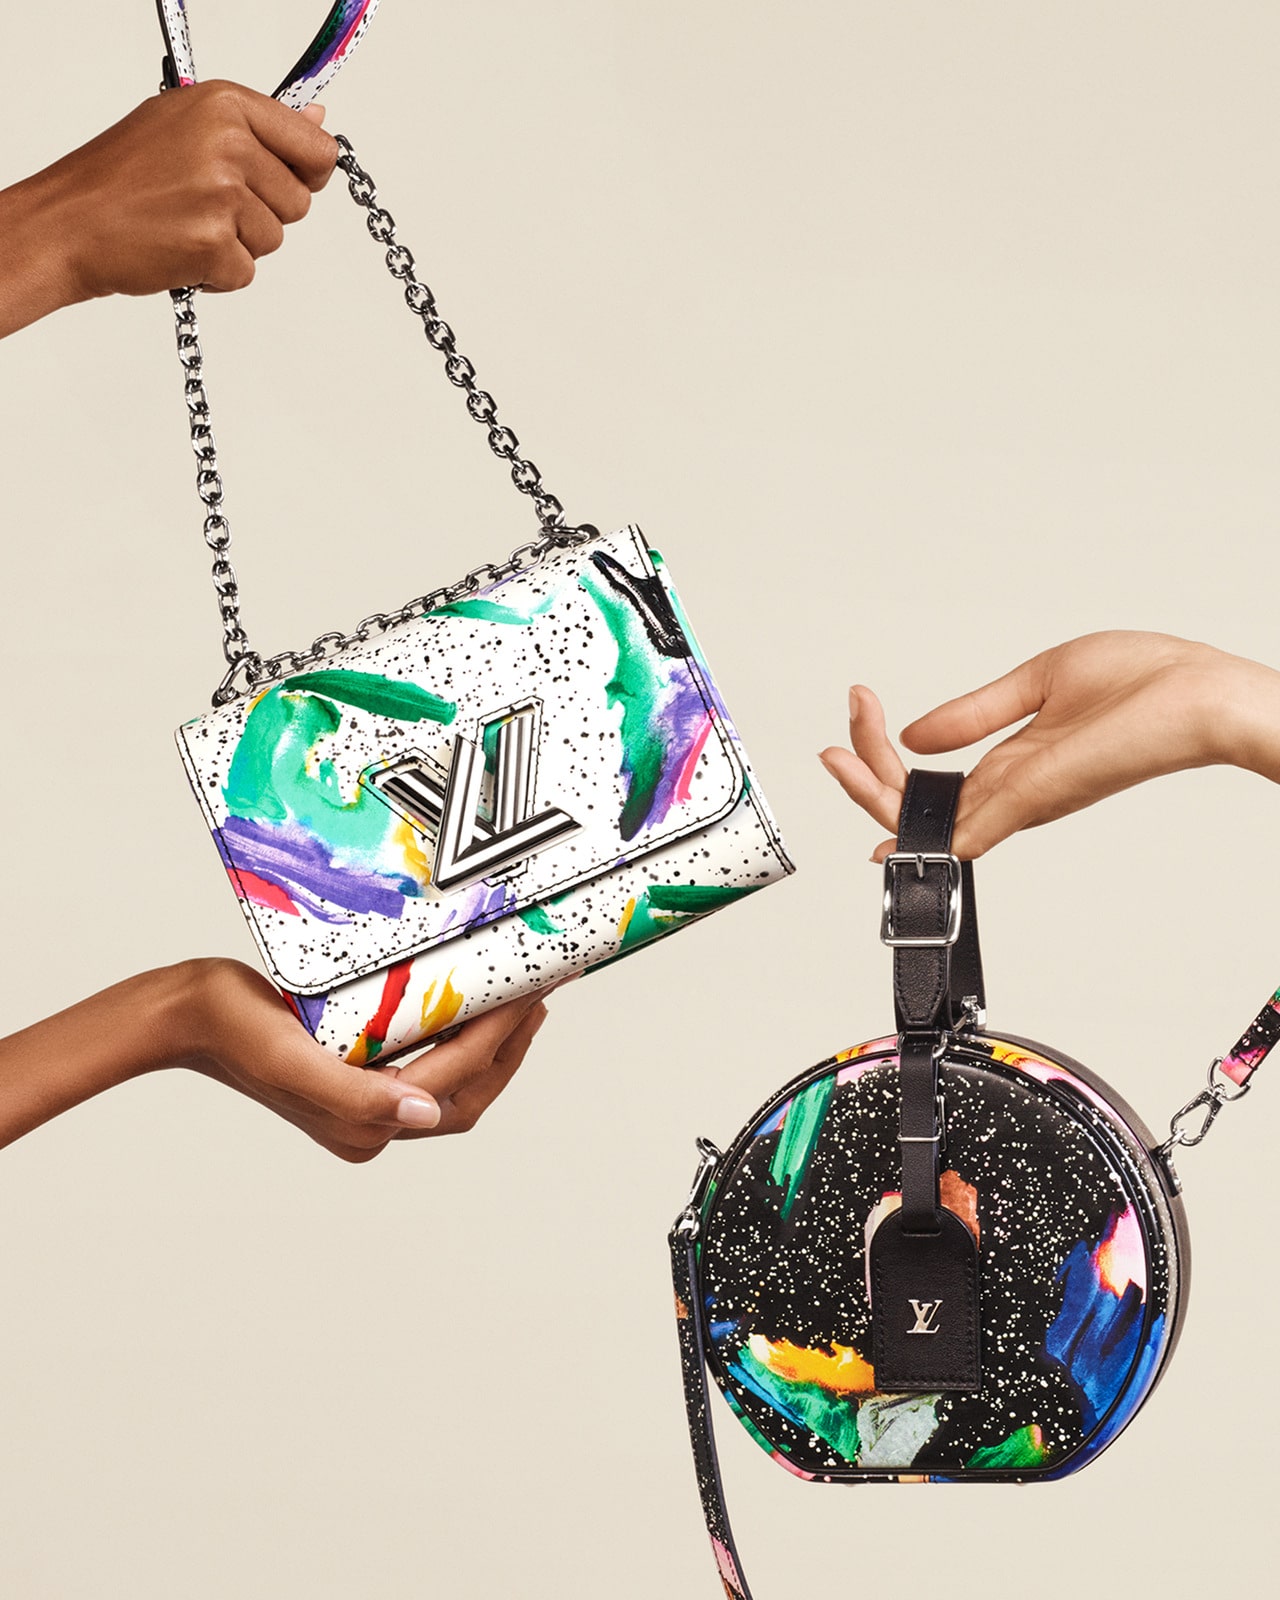 Louis Vuitton Spring 2020 Twist Handbag Ad Campaign